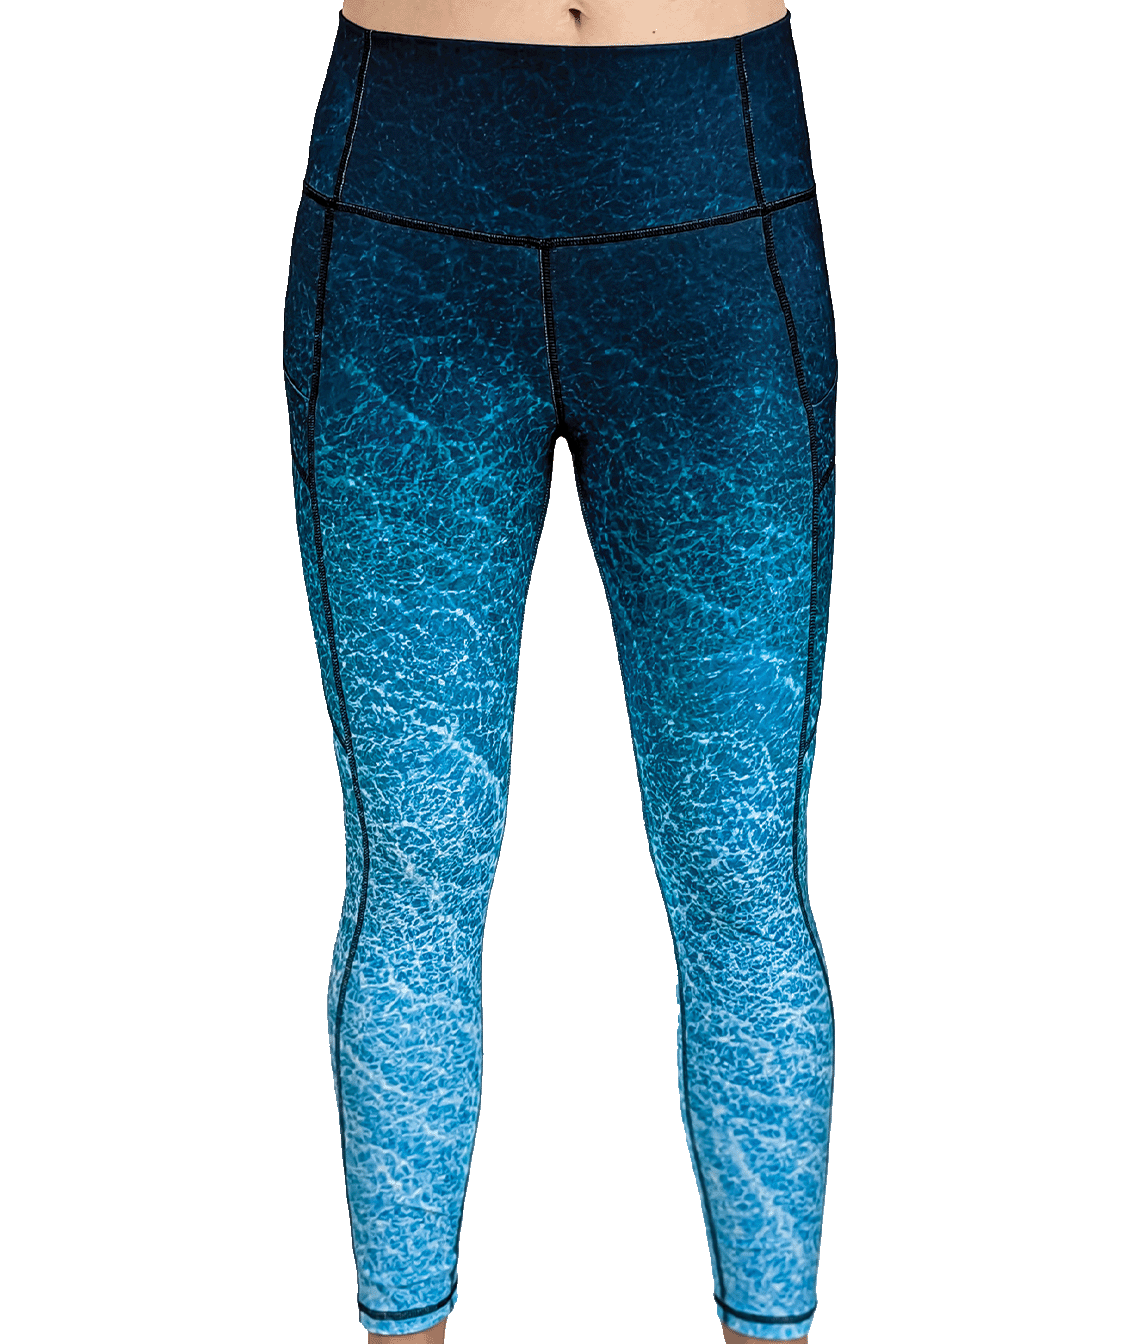 clear yoga pants